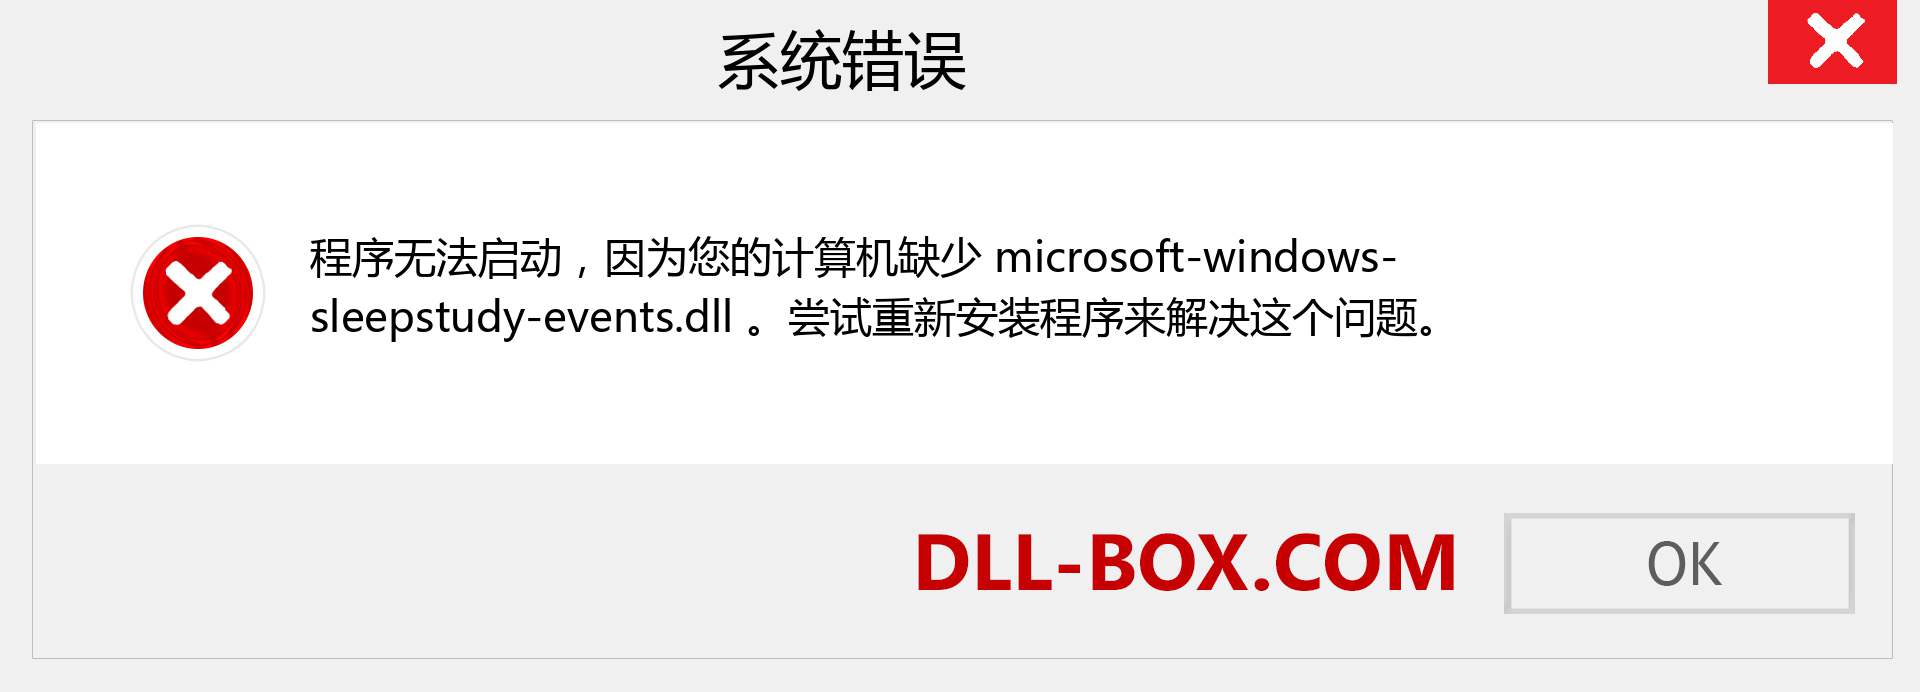 microsoft-windows-sleepstudy-events.dll 文件丢失？。 适用于 Windows 7、8、10 的下载 - 修复 Windows、照片、图像上的 microsoft-windows-sleepstudy-events dll 丢失错误